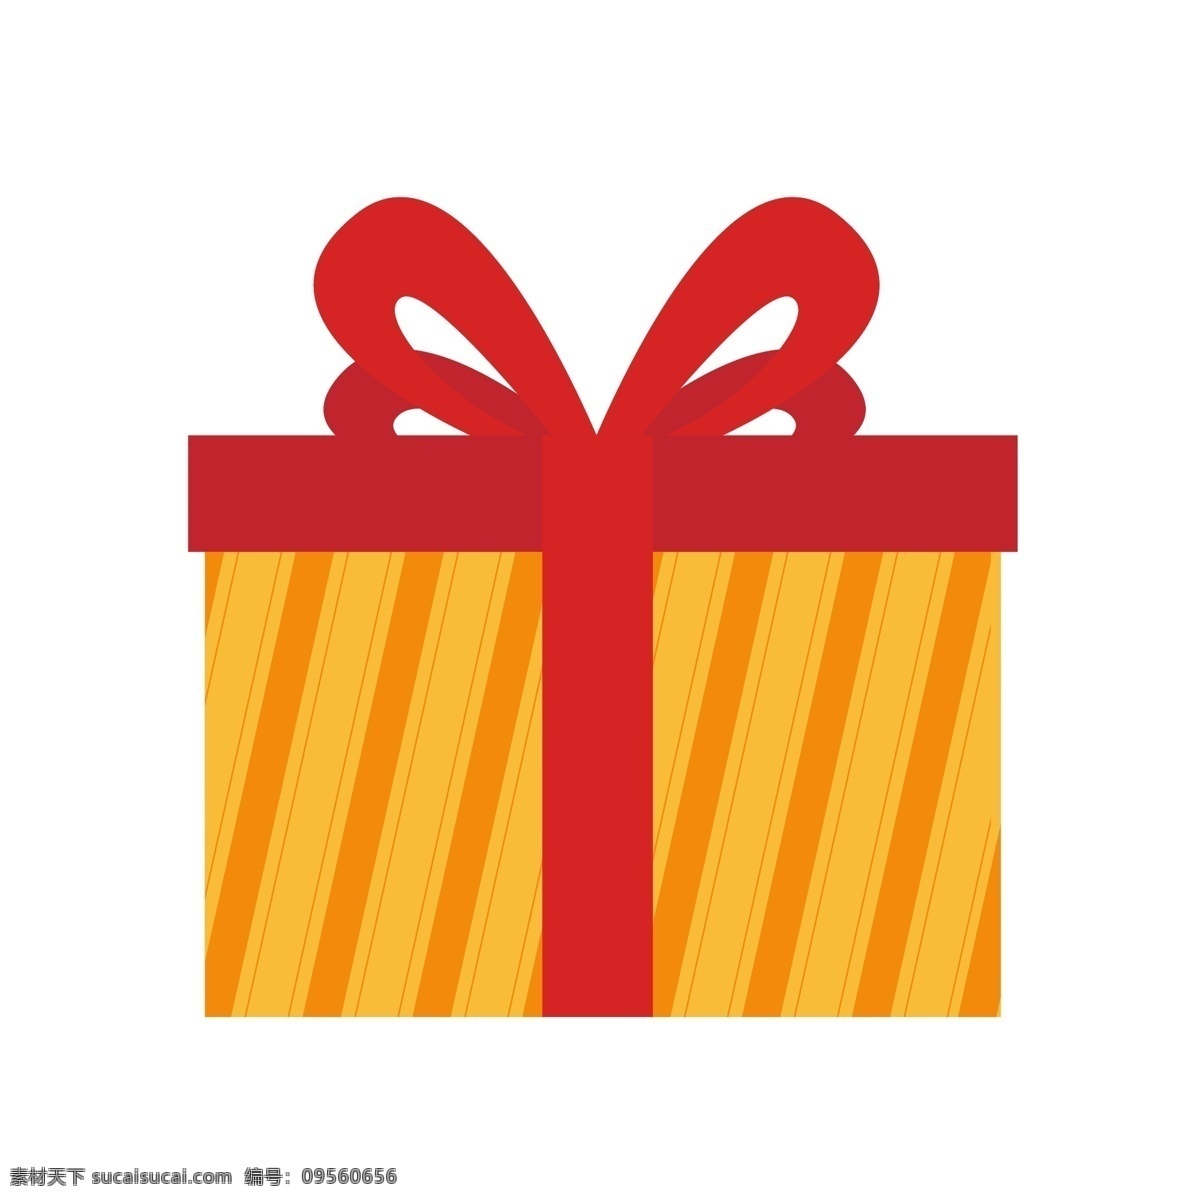 矢量 红色 黄色 礼品 盒子 圣诞节 模型 物品 礼物 装饰 红色礼物 黄色礼物 新年礼物 可爱礼物 卡通礼物 礼盒 礼品盒子